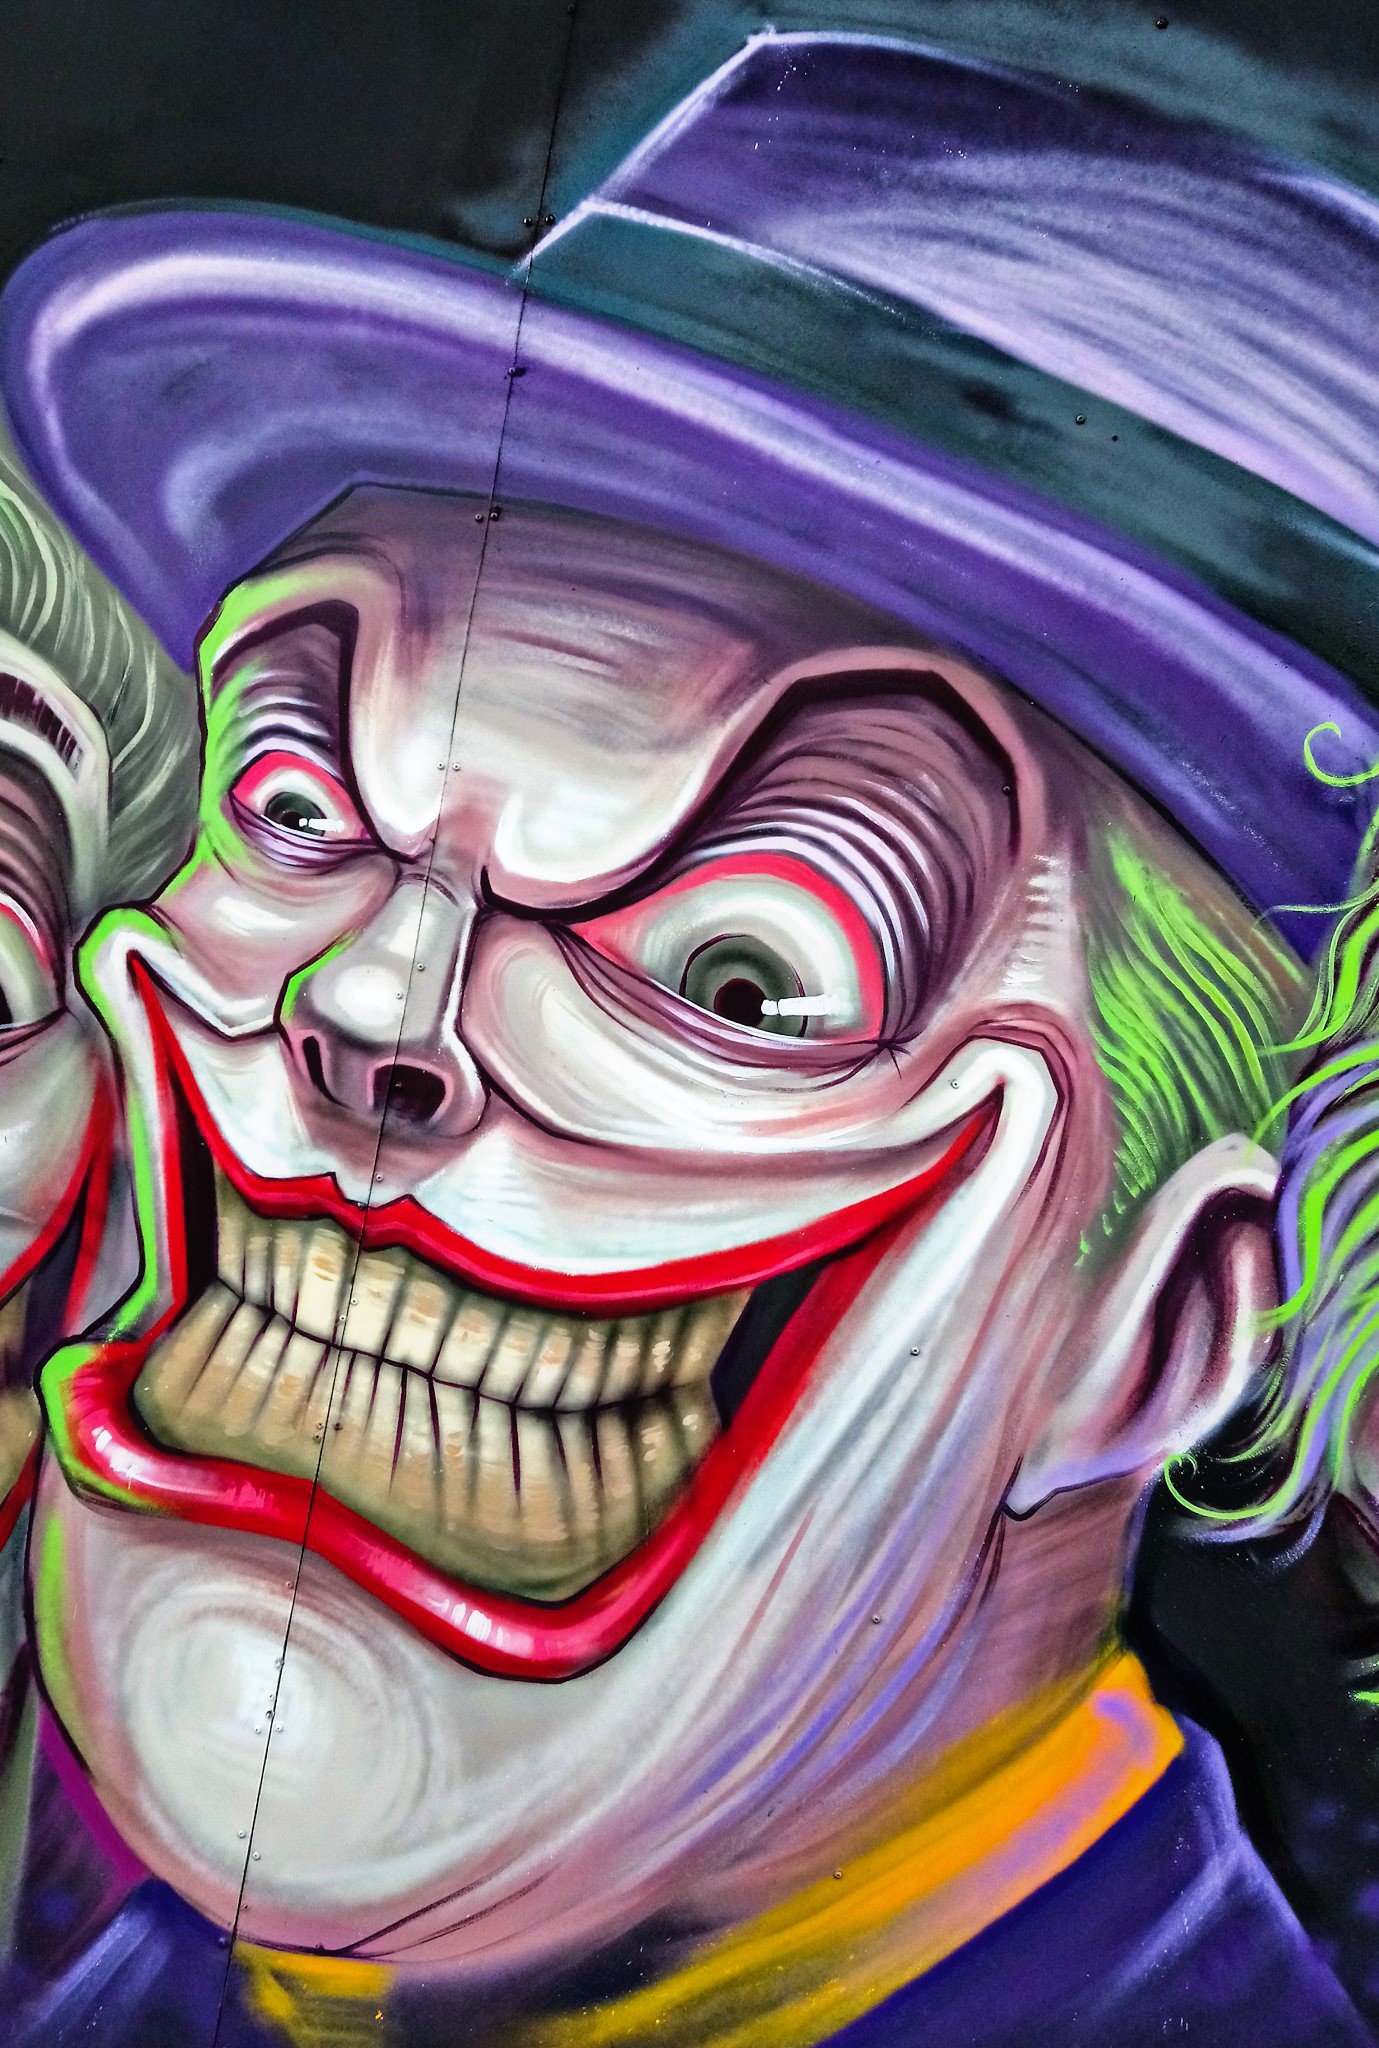 Unduh 4400 Koleksi Gambar  Grafiti Joker  Keren  Terbaik Gratis